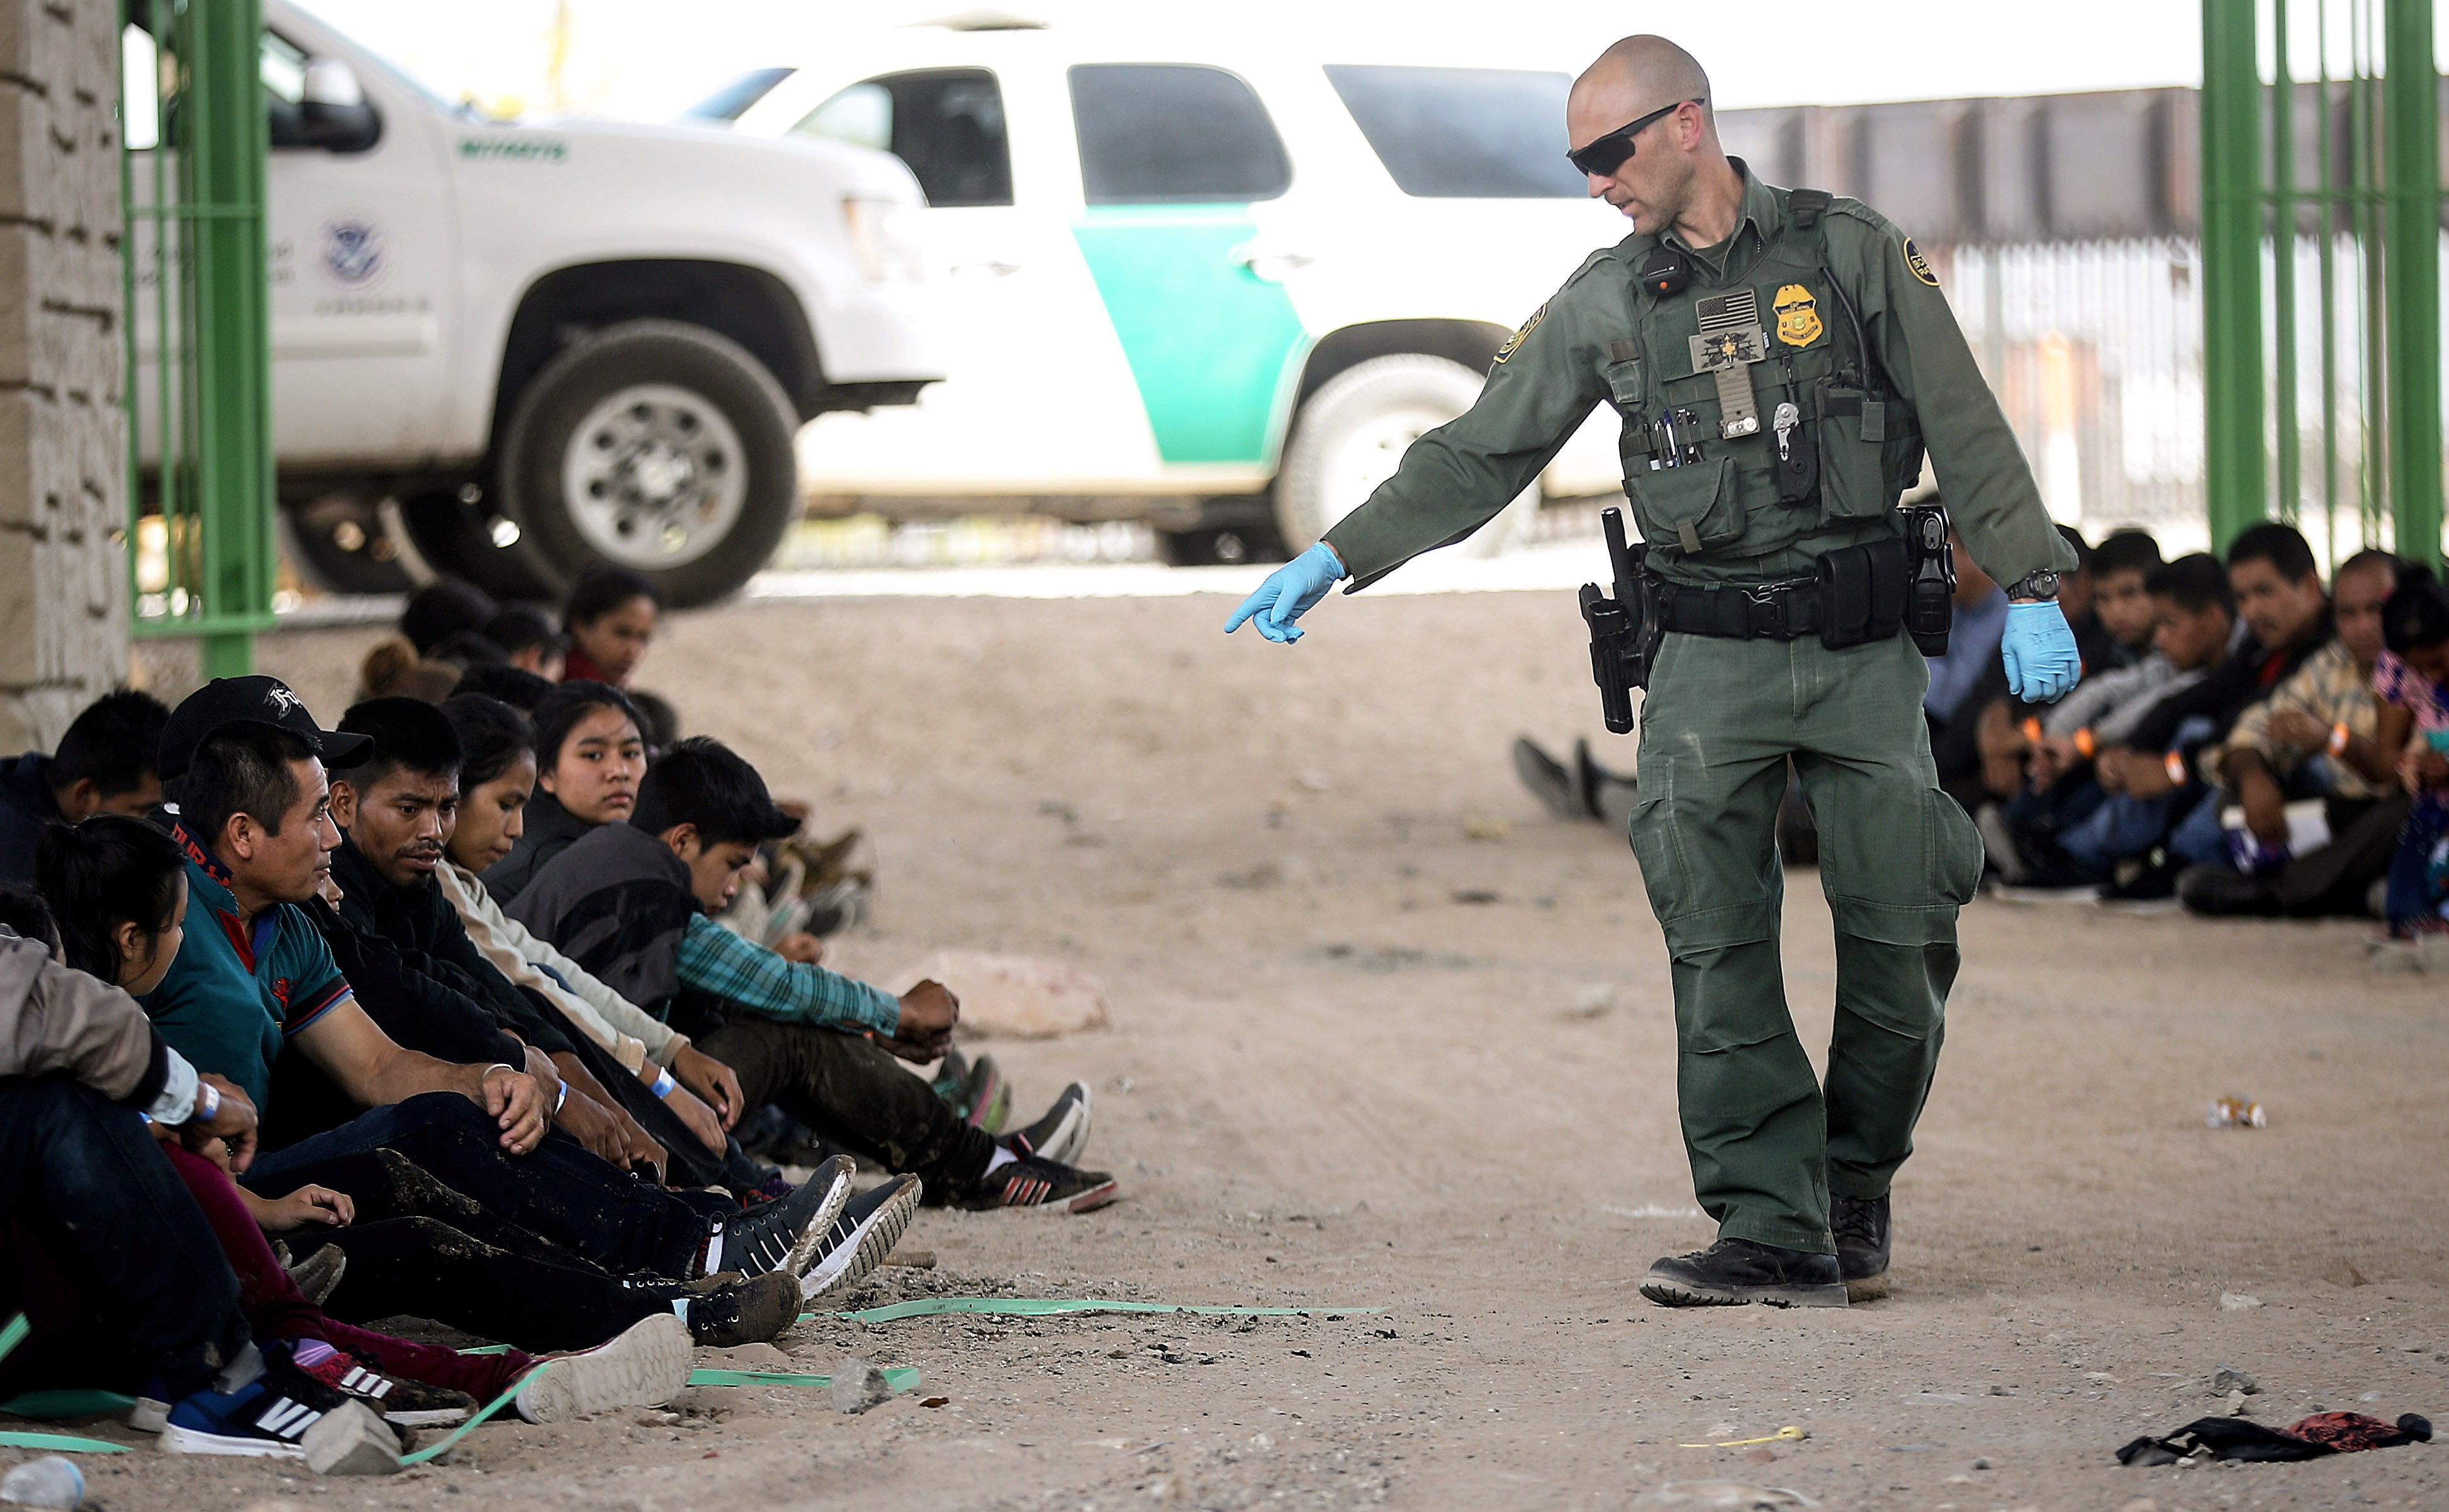 La Fiscalía de Tucson, Arizona, acusa a un agente de abusar de la fuerza y de hacer comentarios racistas contra los migrantes. (Foto Prensa Libre: Hemeroteca PL)